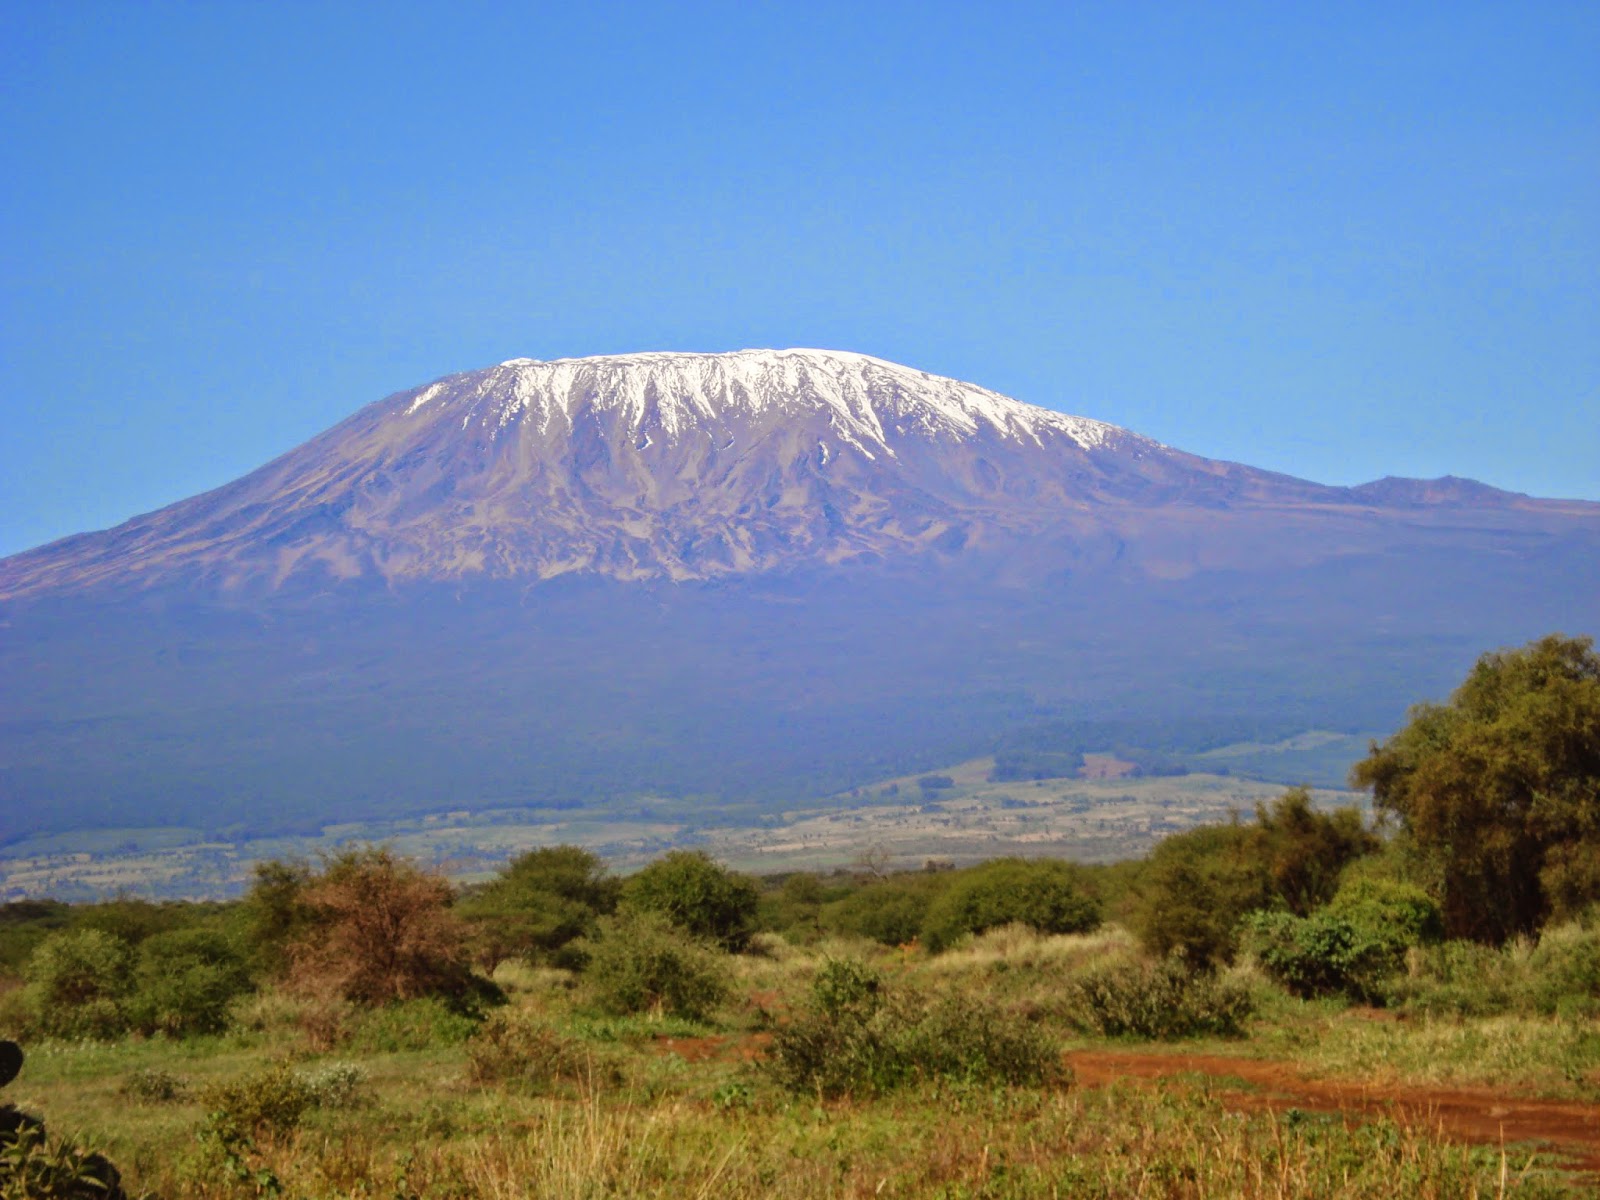 Вулкан Килиманджаро